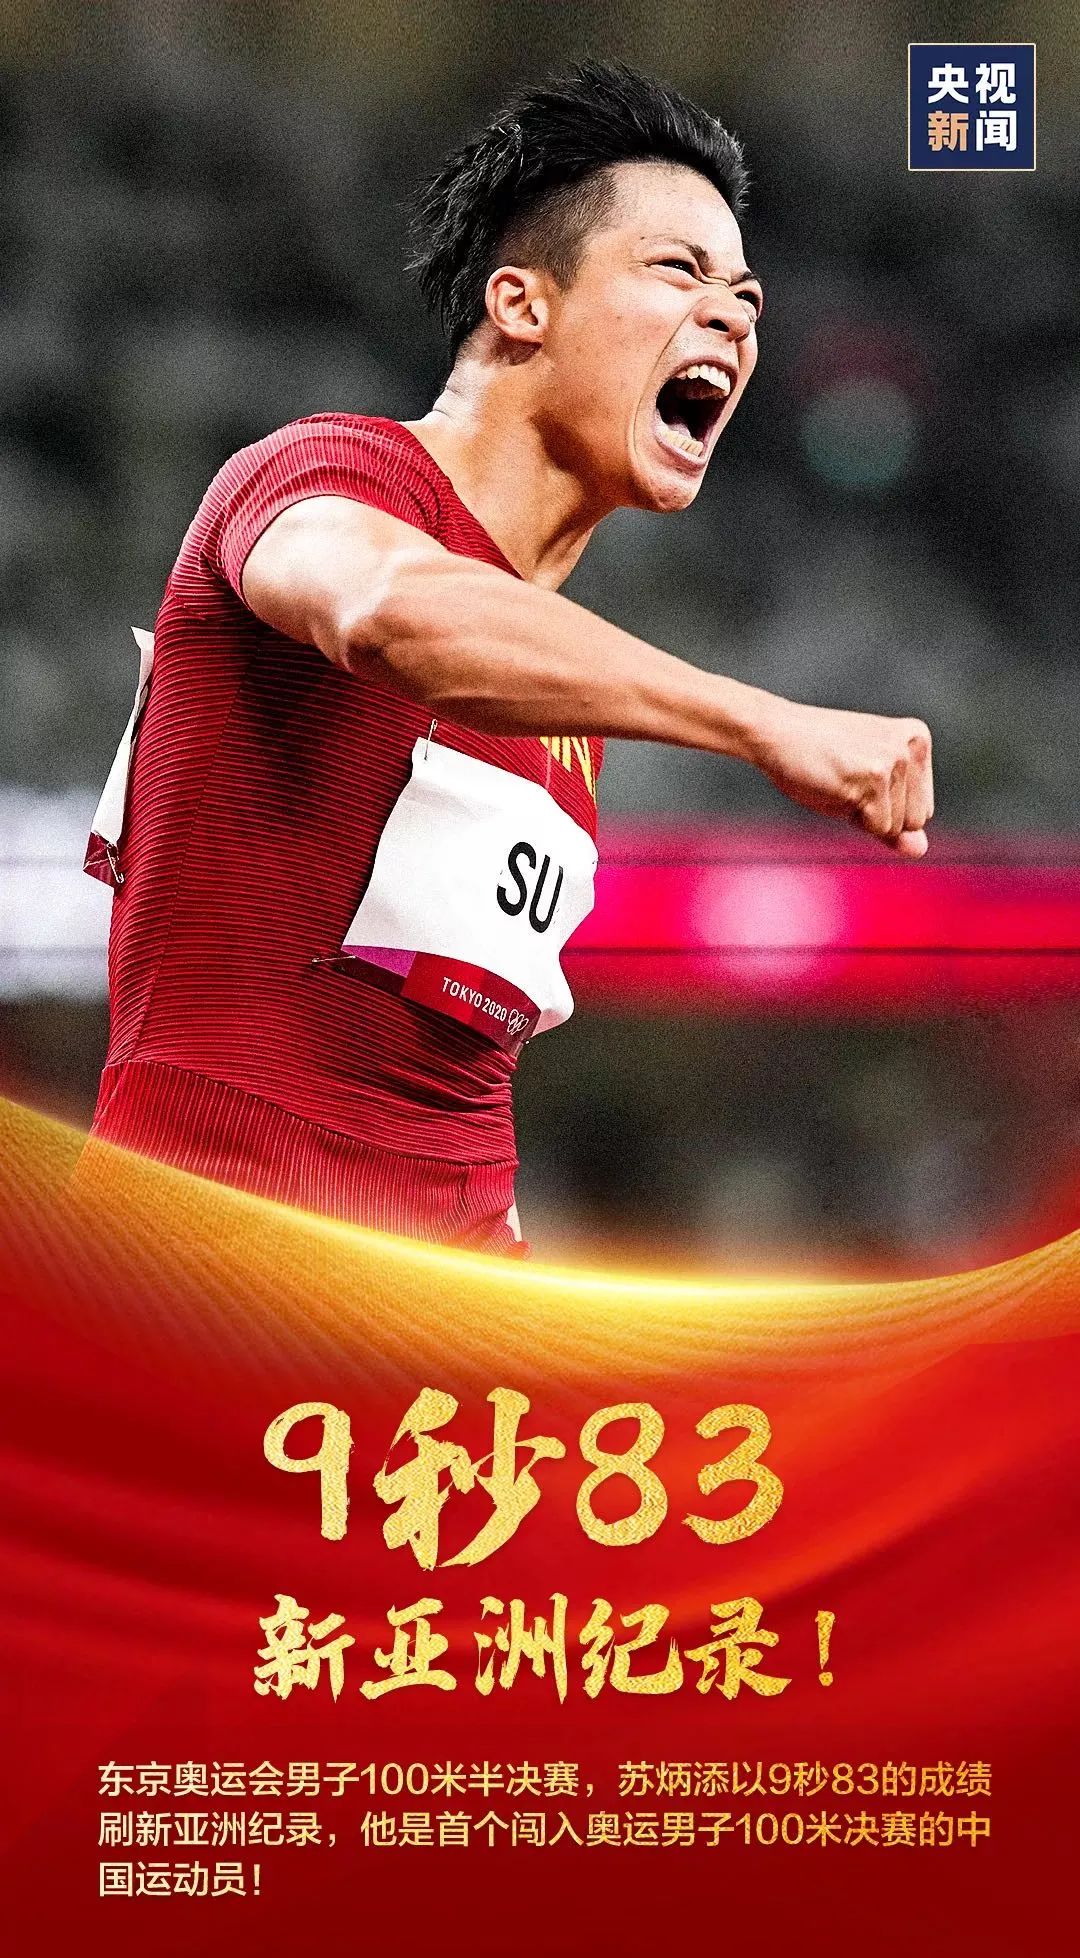 我的“添”！苏炳添获得奥运男子100米第六名！